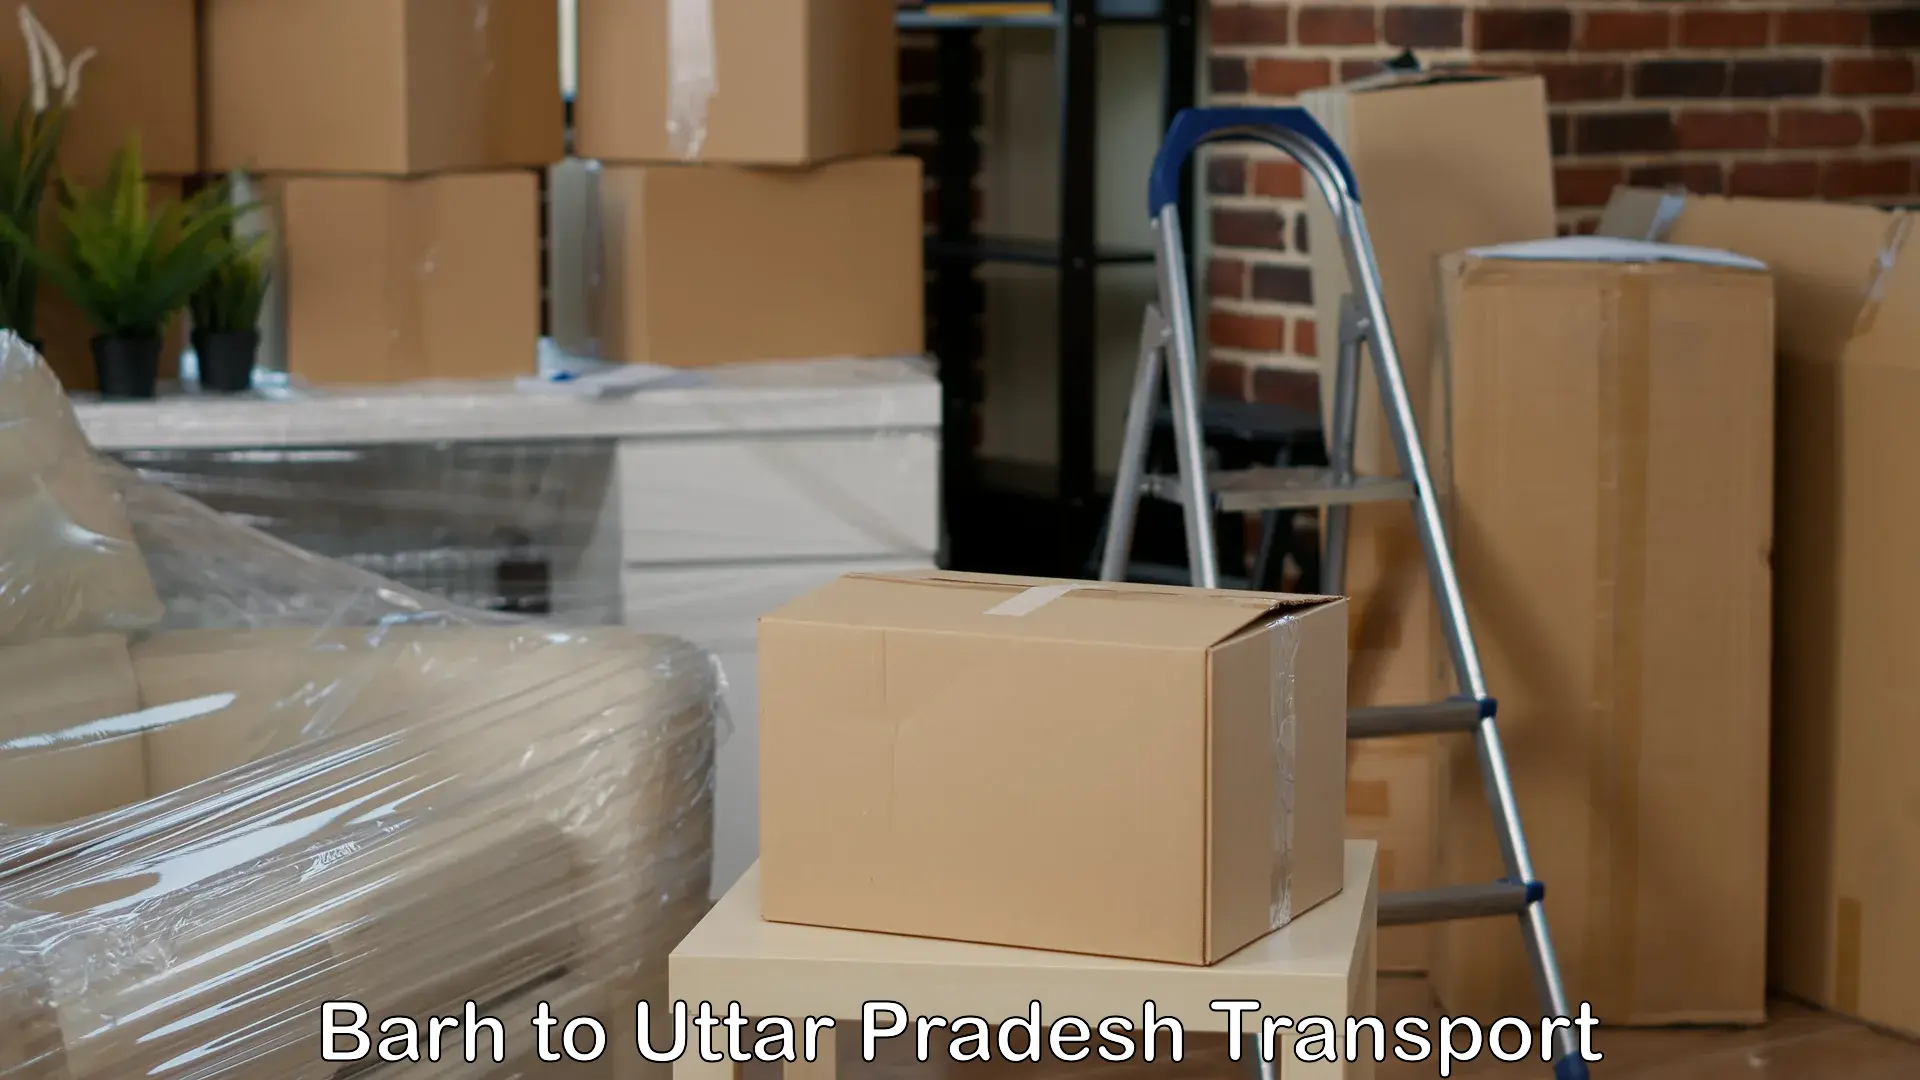 Transport in sharing Barh to IIT Varanasi